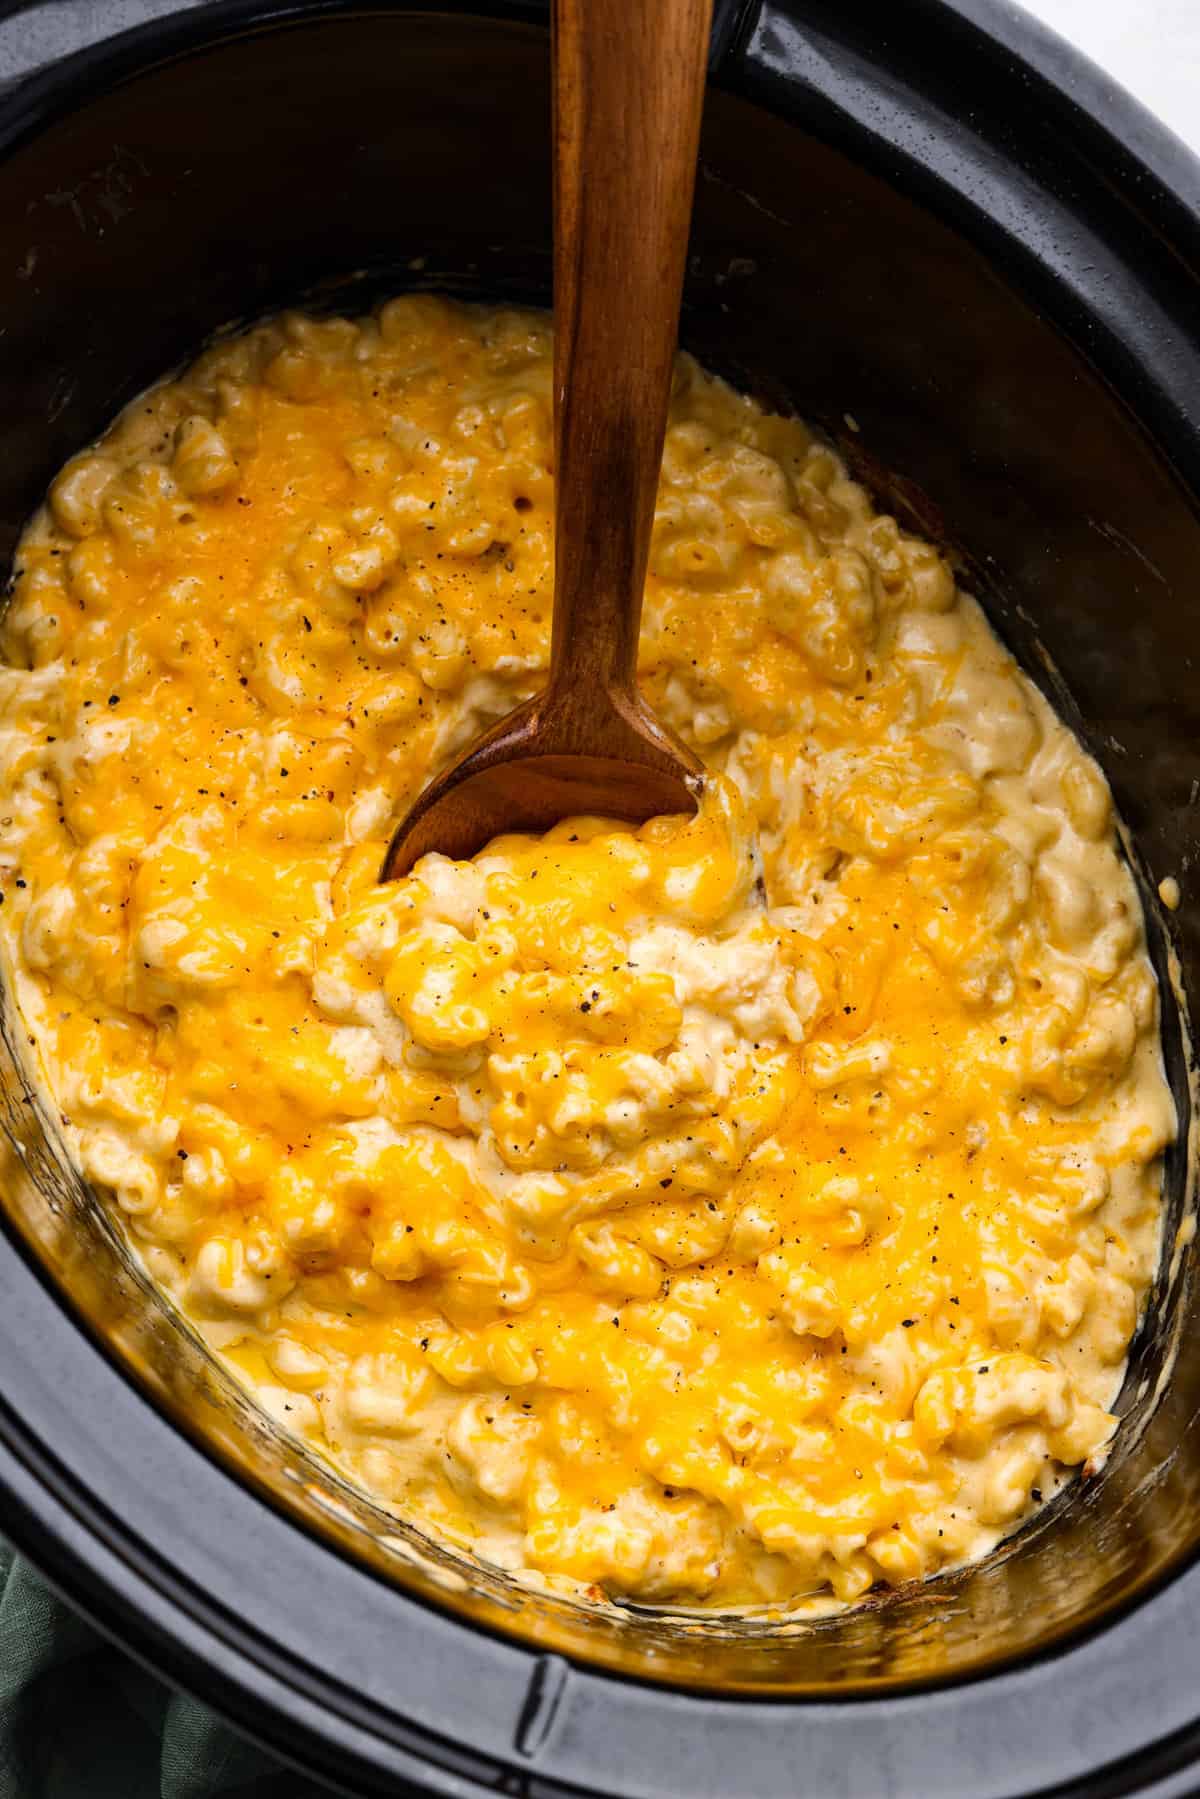 30 Easy Crock Pot Recipes That'll Make Meal Prep a Cinch